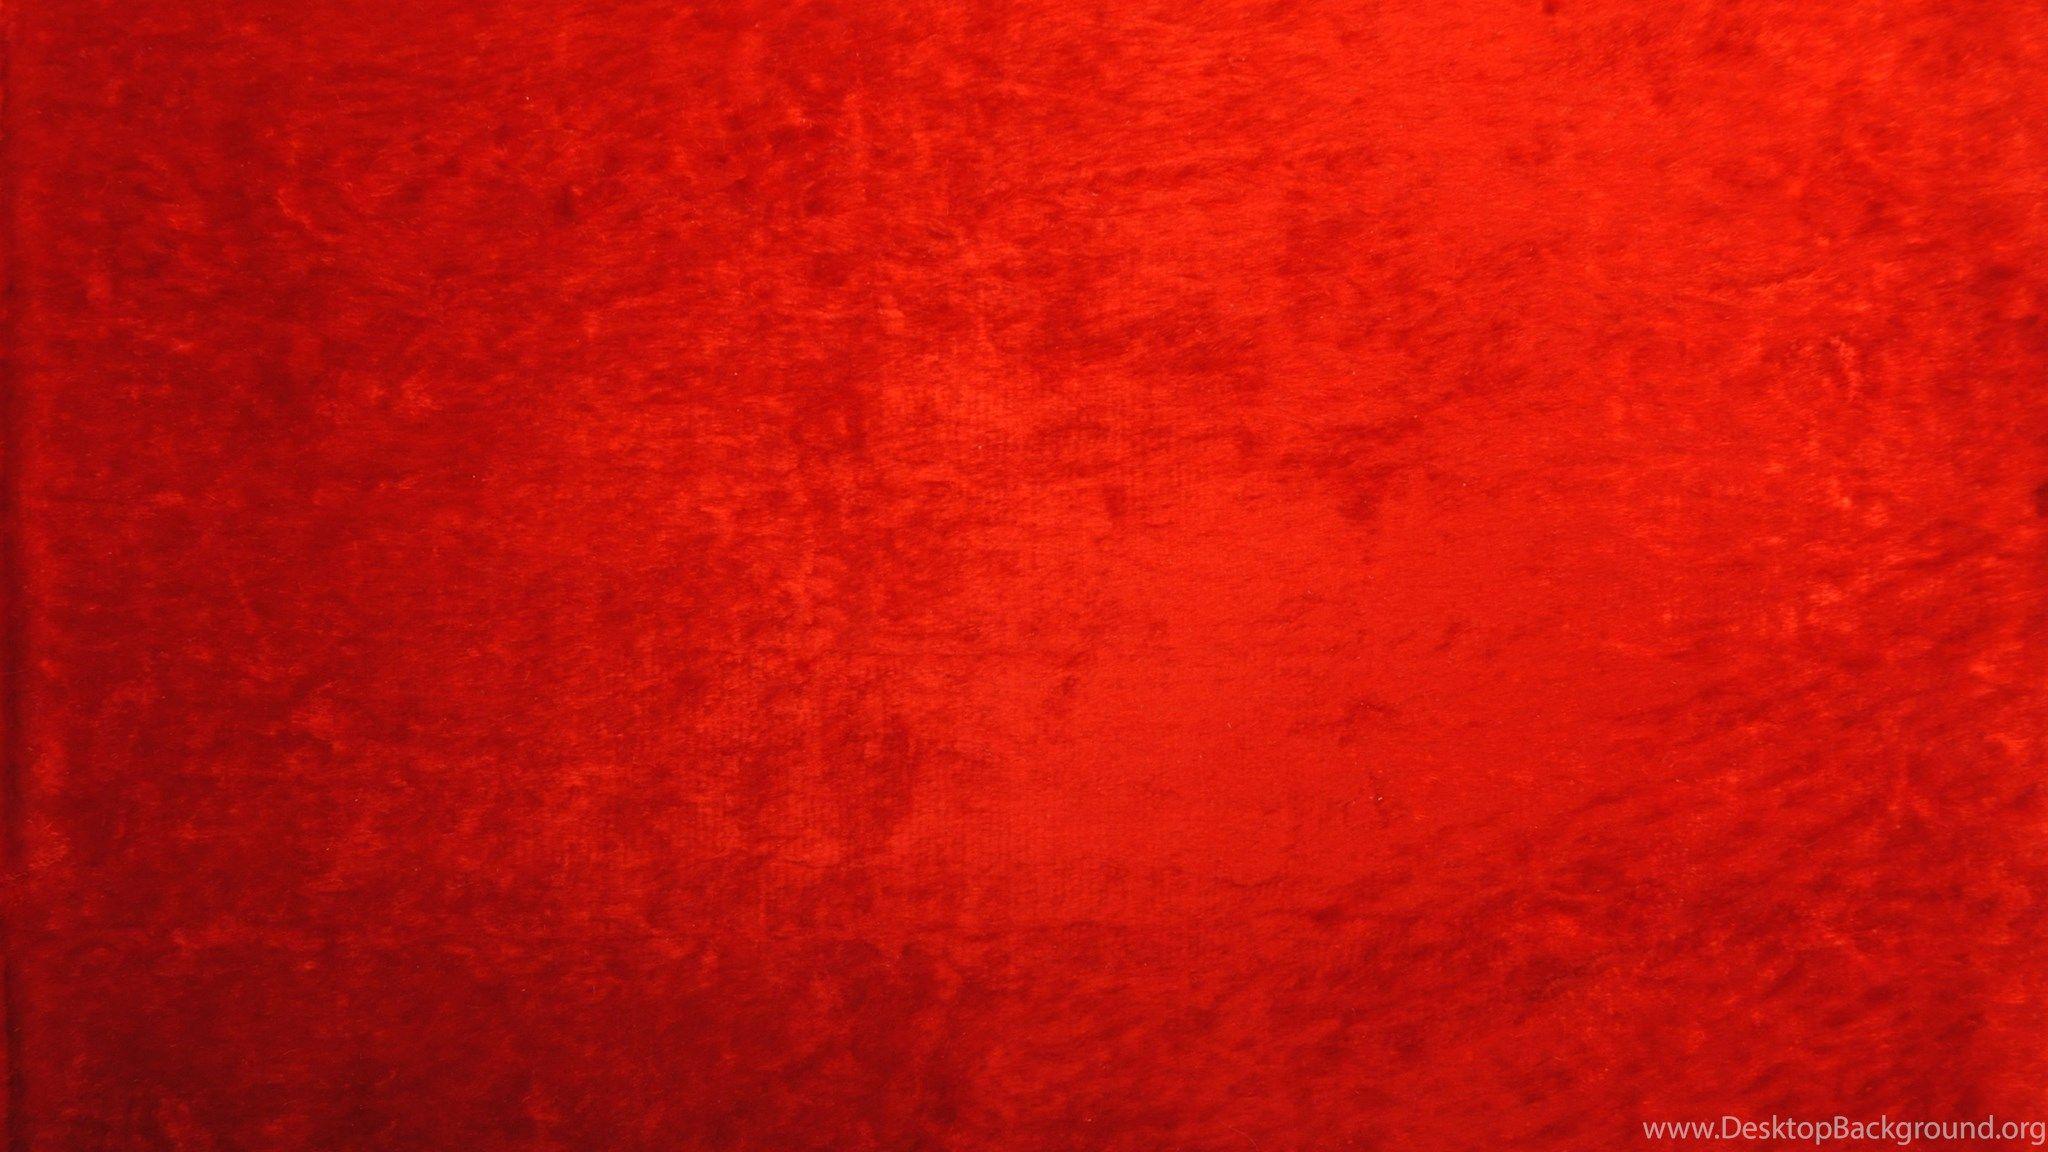 Hình nền đỏ - Nếu bạn muốn làm cho điện thoại hoặc máy tính của mình trở nên nổi bật và sành điệu hơn, hãy xem ngay hình ảnh liên quan đến hình nền đỏ. Màu đỏ sẽ giúp tạo ra một phong cách đầy năng lượng và sức hấp dẫn.